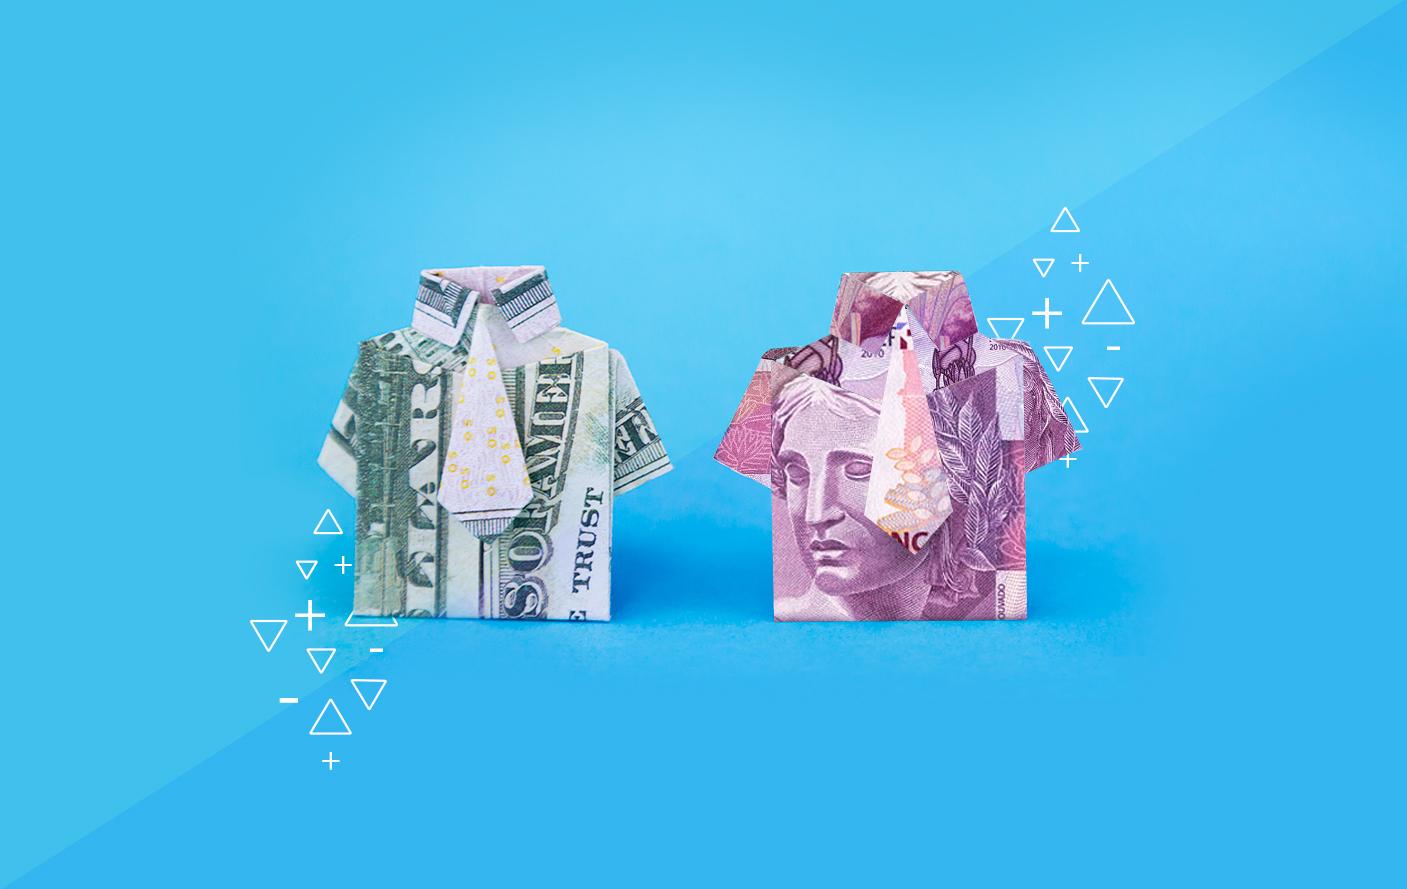 Taxa de câmbio: fundo azul com duas notas de dinheiro, um dólar e uma nota de cinco reais. As notas estão dobradas em formato de camisa social.